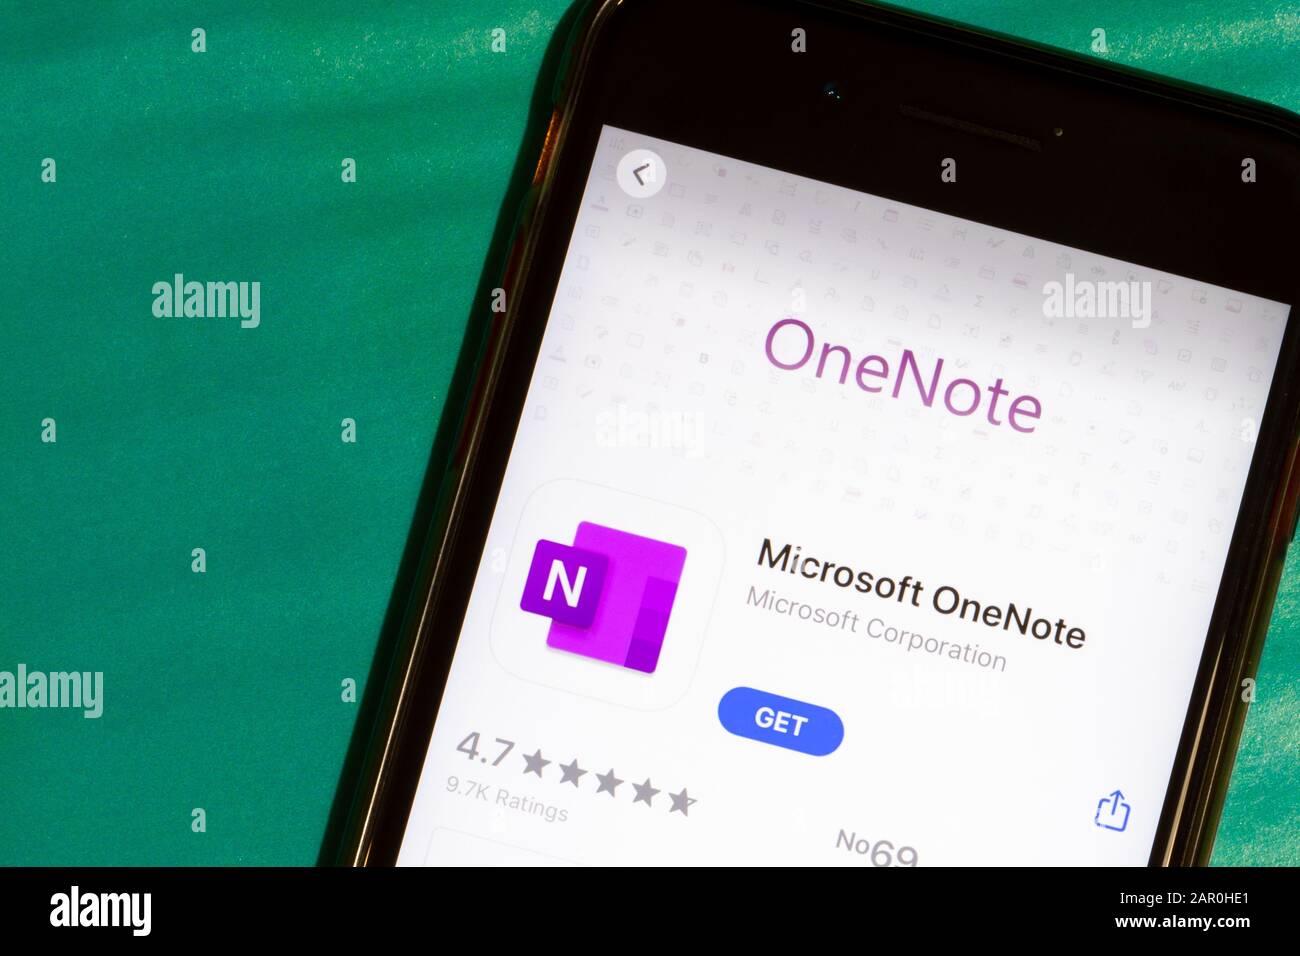 Hình ảnh liên quan đến Onenote logo sẽ cho bạn một cái nhìn toàn cảnh về phần mềm hữu ích này. Thiết kế độc đáo, tỉ mỉ với các nét chữ cá tính cộng với gam màu xanh lá cây đặc trưng, logo Onenote được đánh giá là một trong những biểu tượng của thế giới công nghệ.